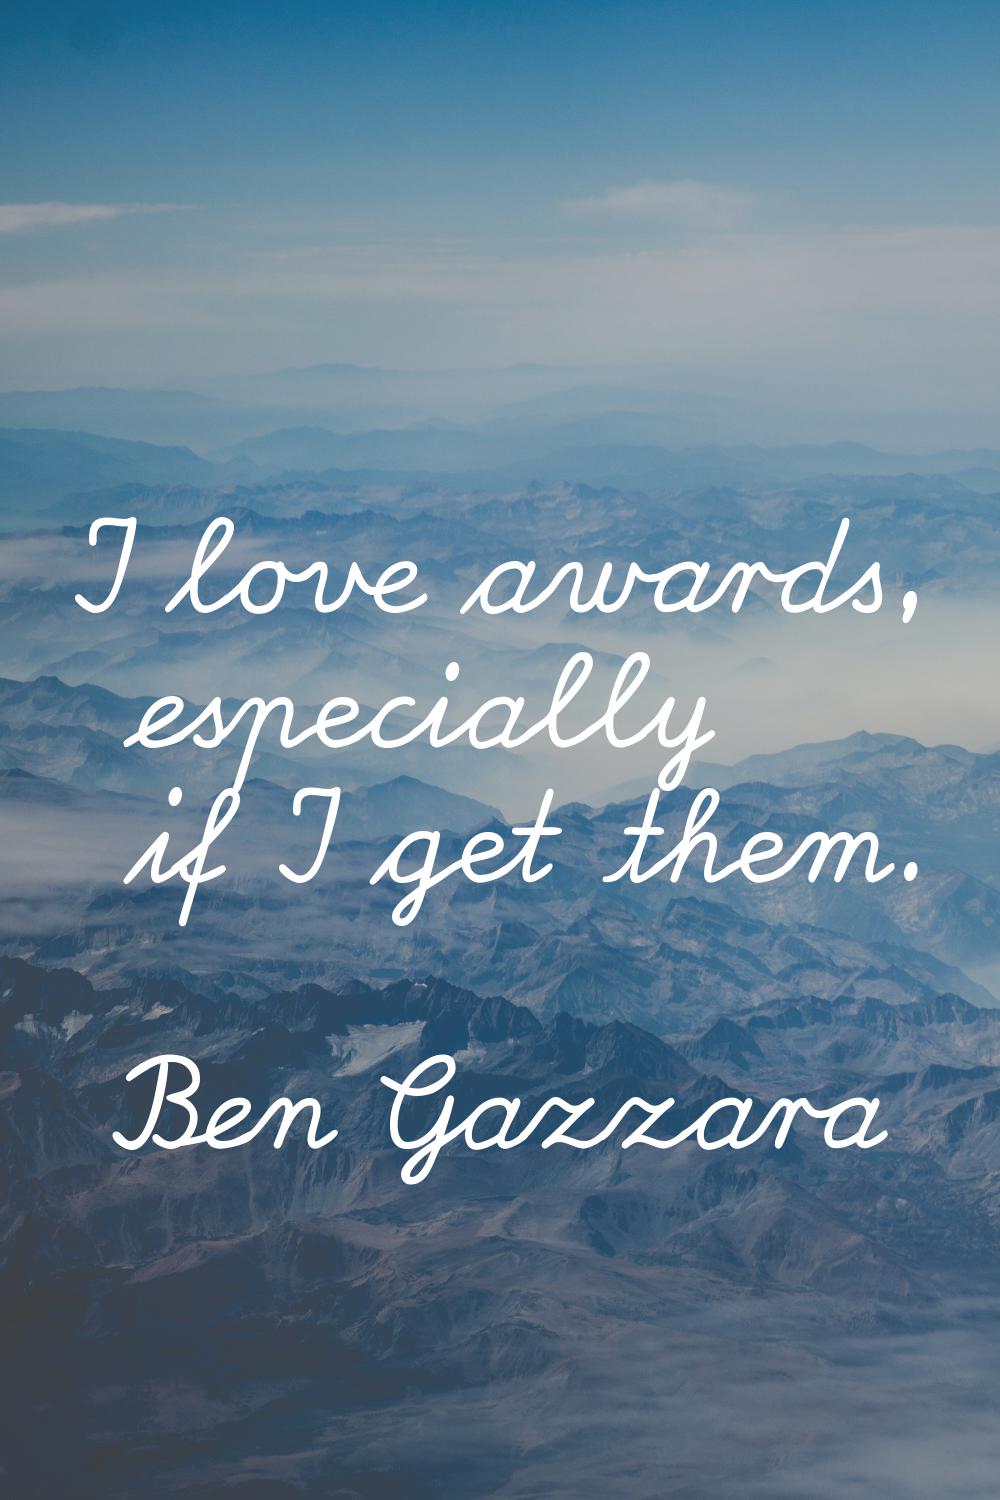 I love awards, especially if I get them.